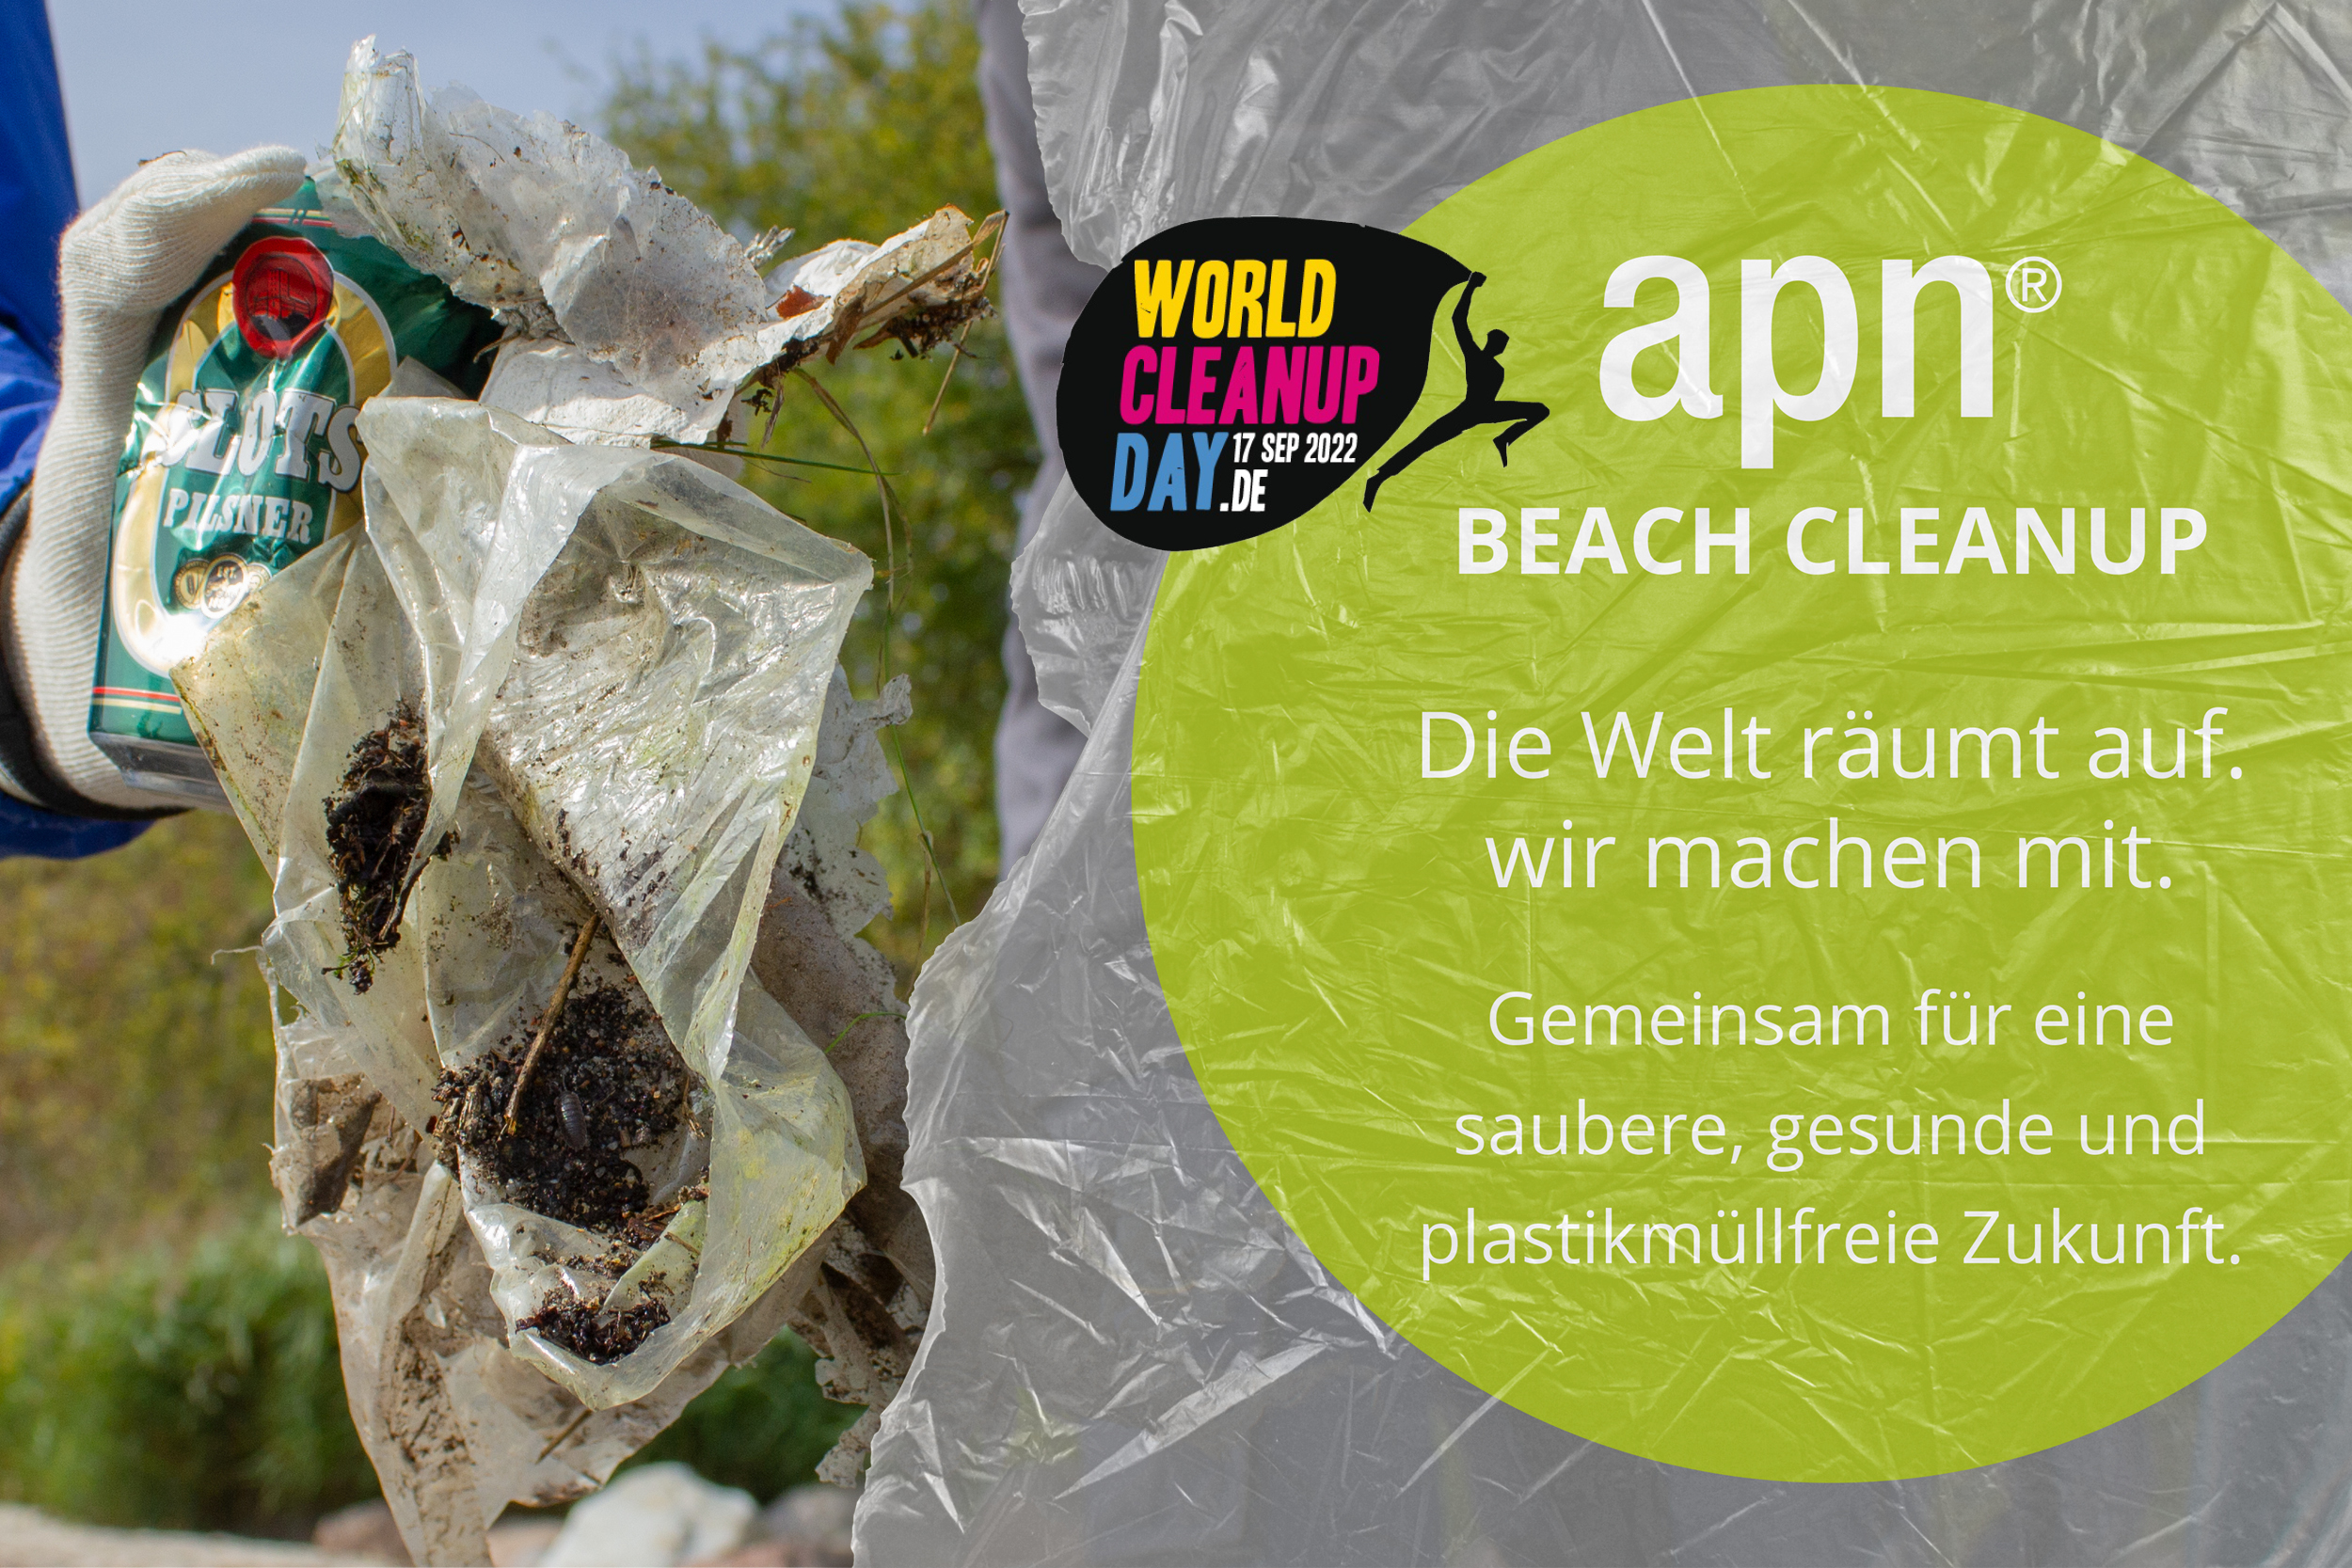 Die Welt räumt auf - Beach Cleanup